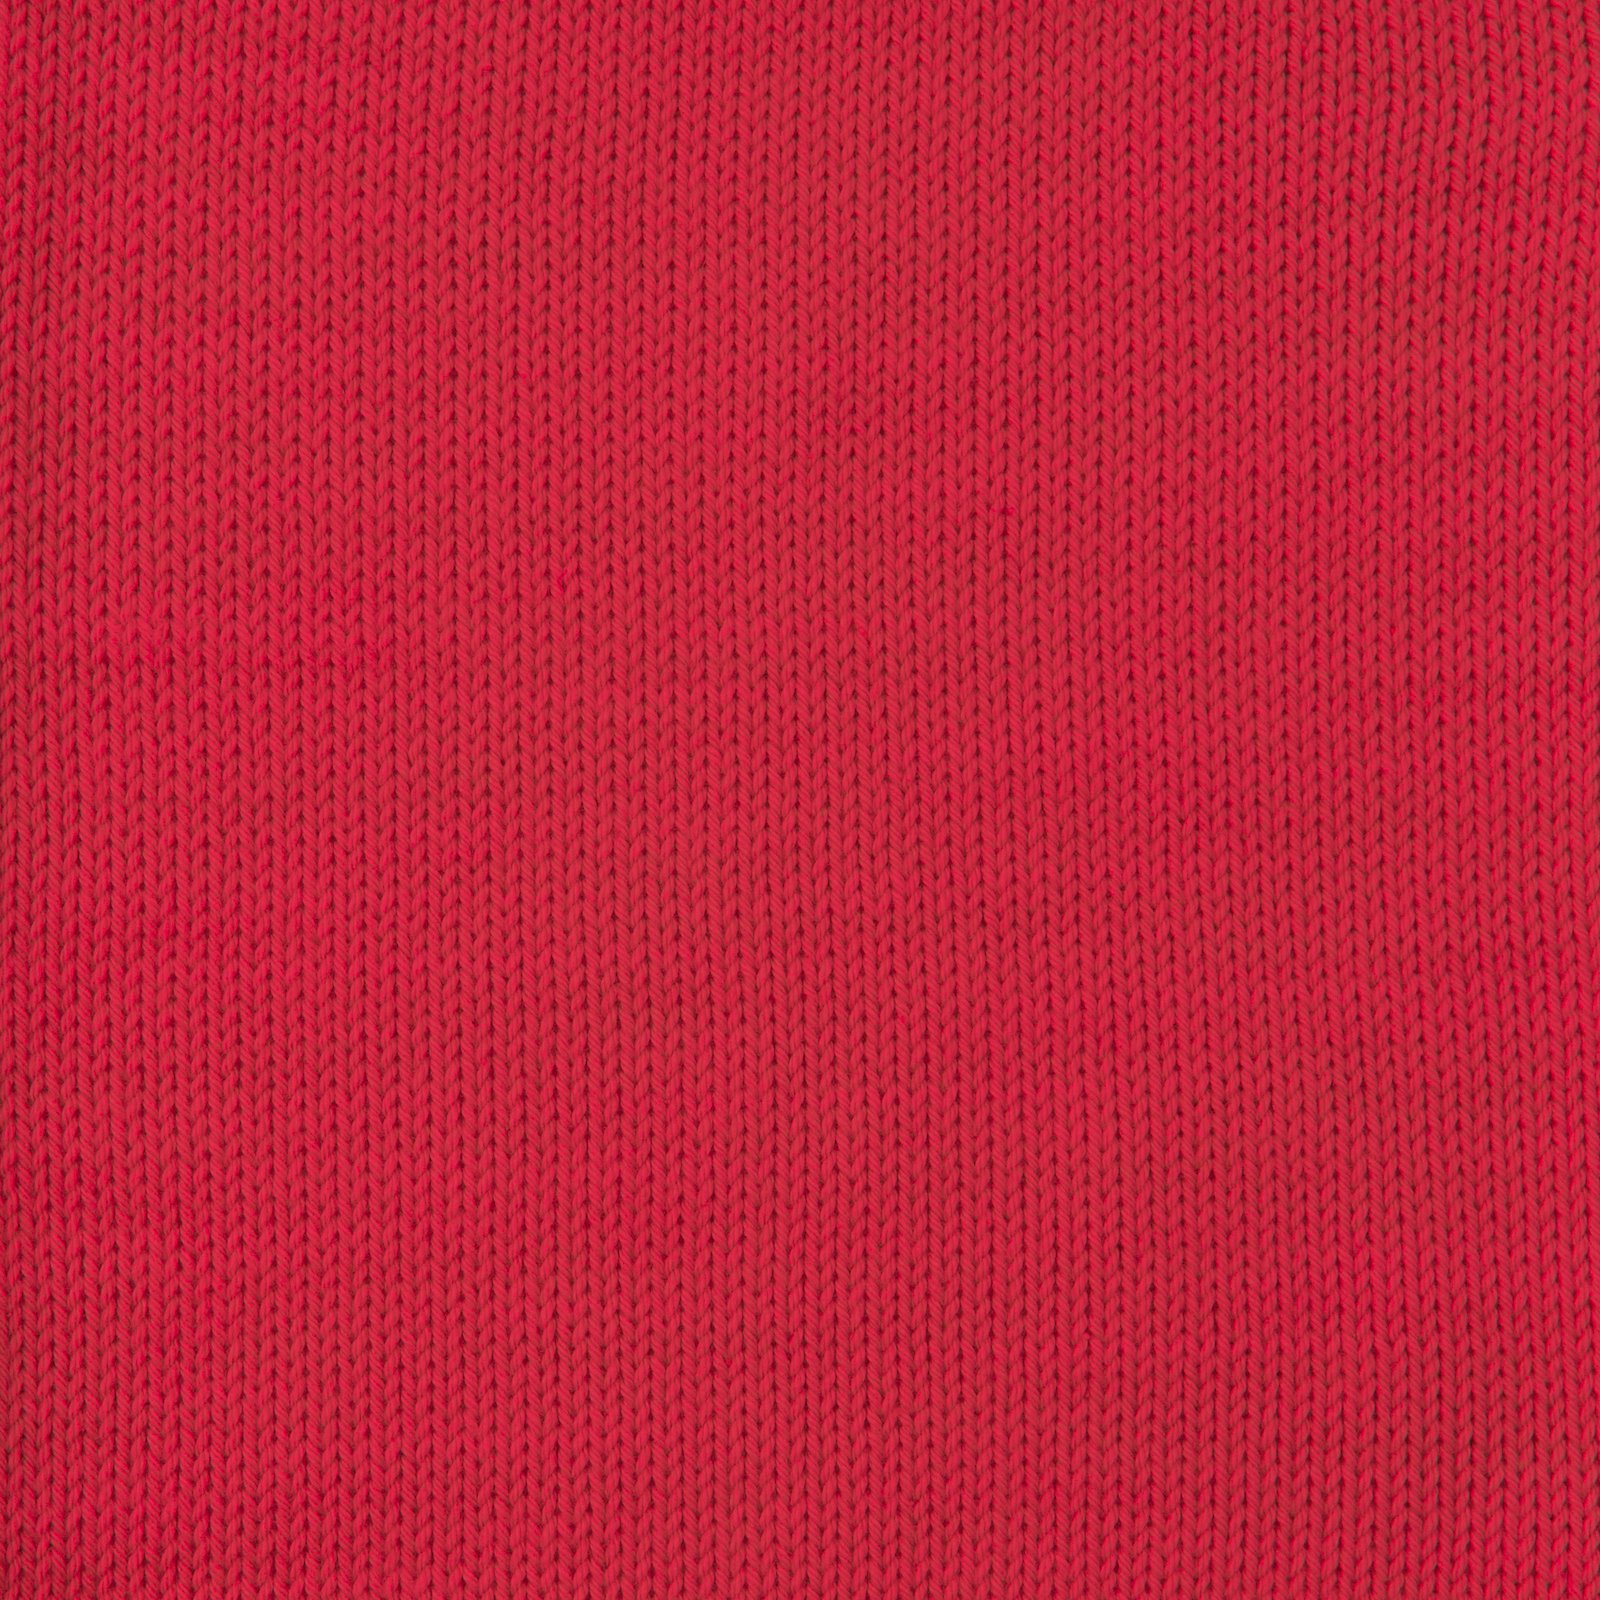 FRAYA, 100% cotton 8/4  yarn  "Colourful", red 90060011_sskit